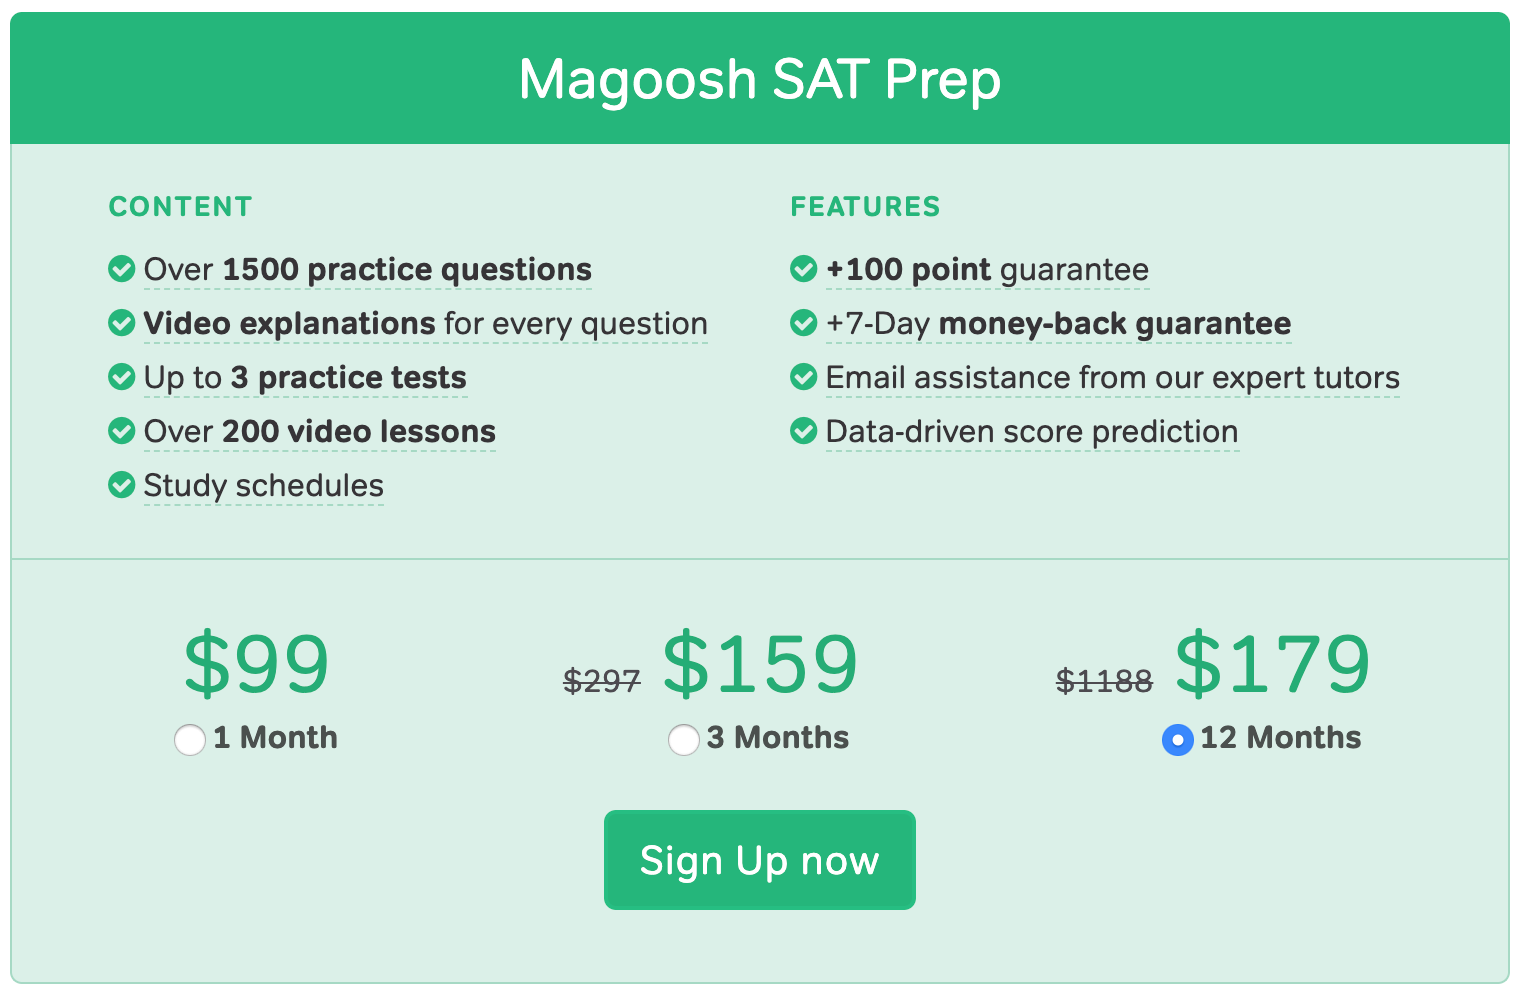 Magoosh SAT Pricing